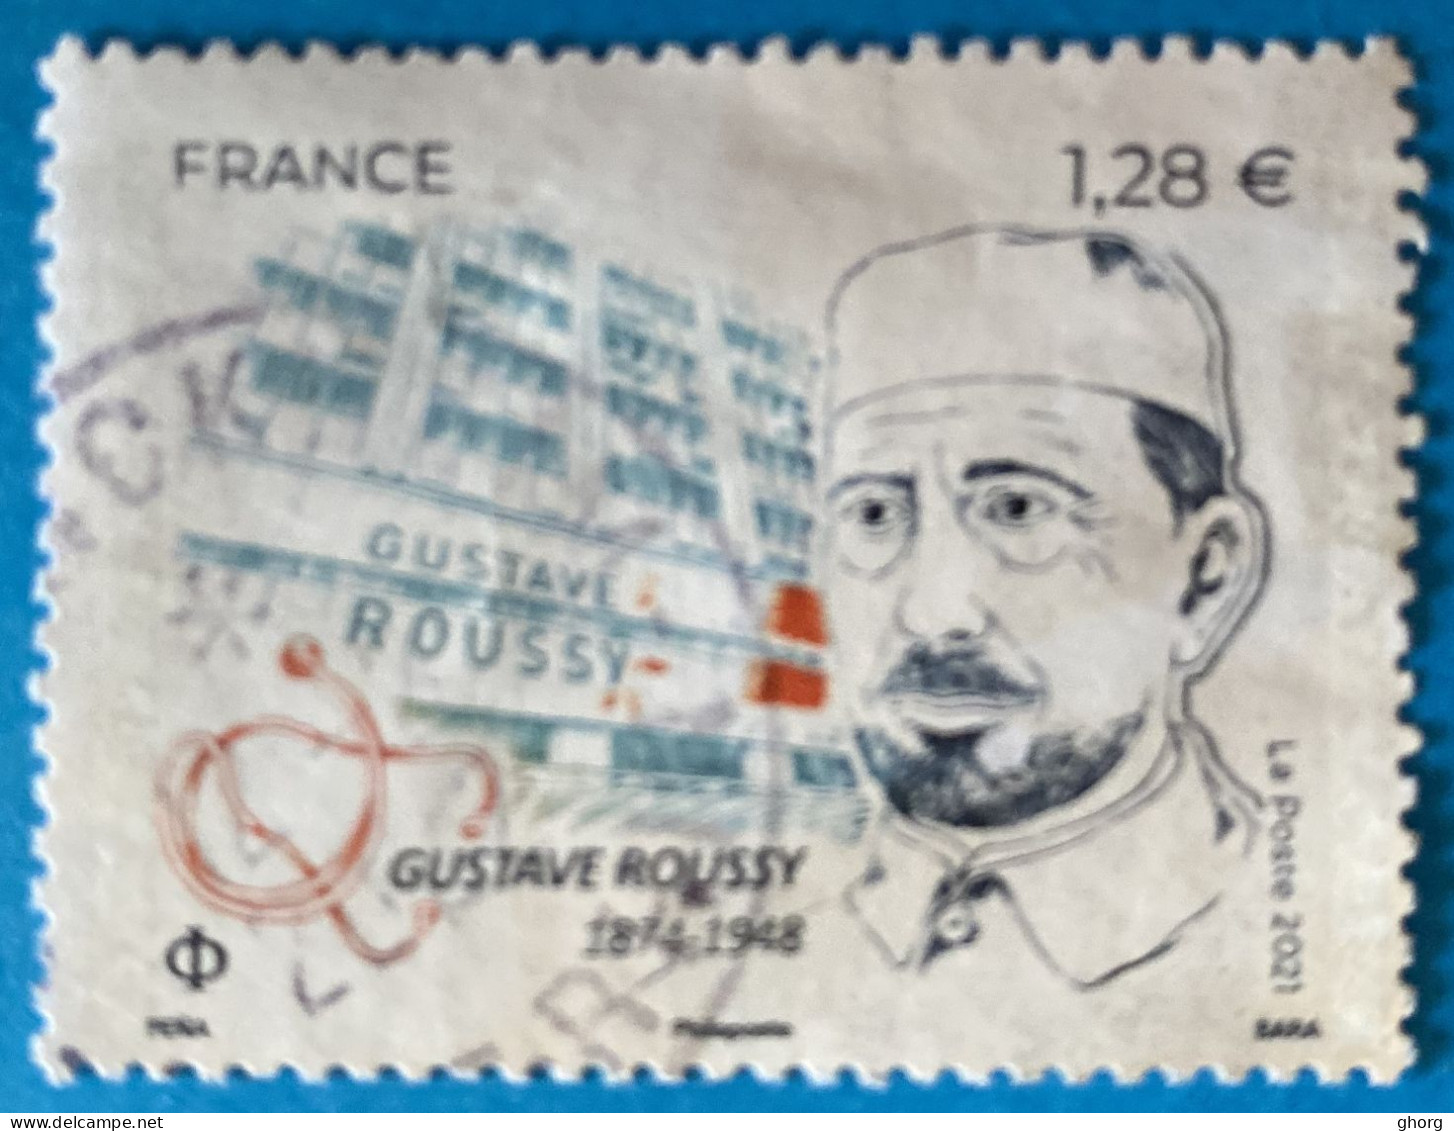 France 2021 : Gustave Roussy, Médecin Français Spécialisé En Oncologie Neurologie Et Anatomo-pathologie N° 5521 Oblitéré - Used Stamps